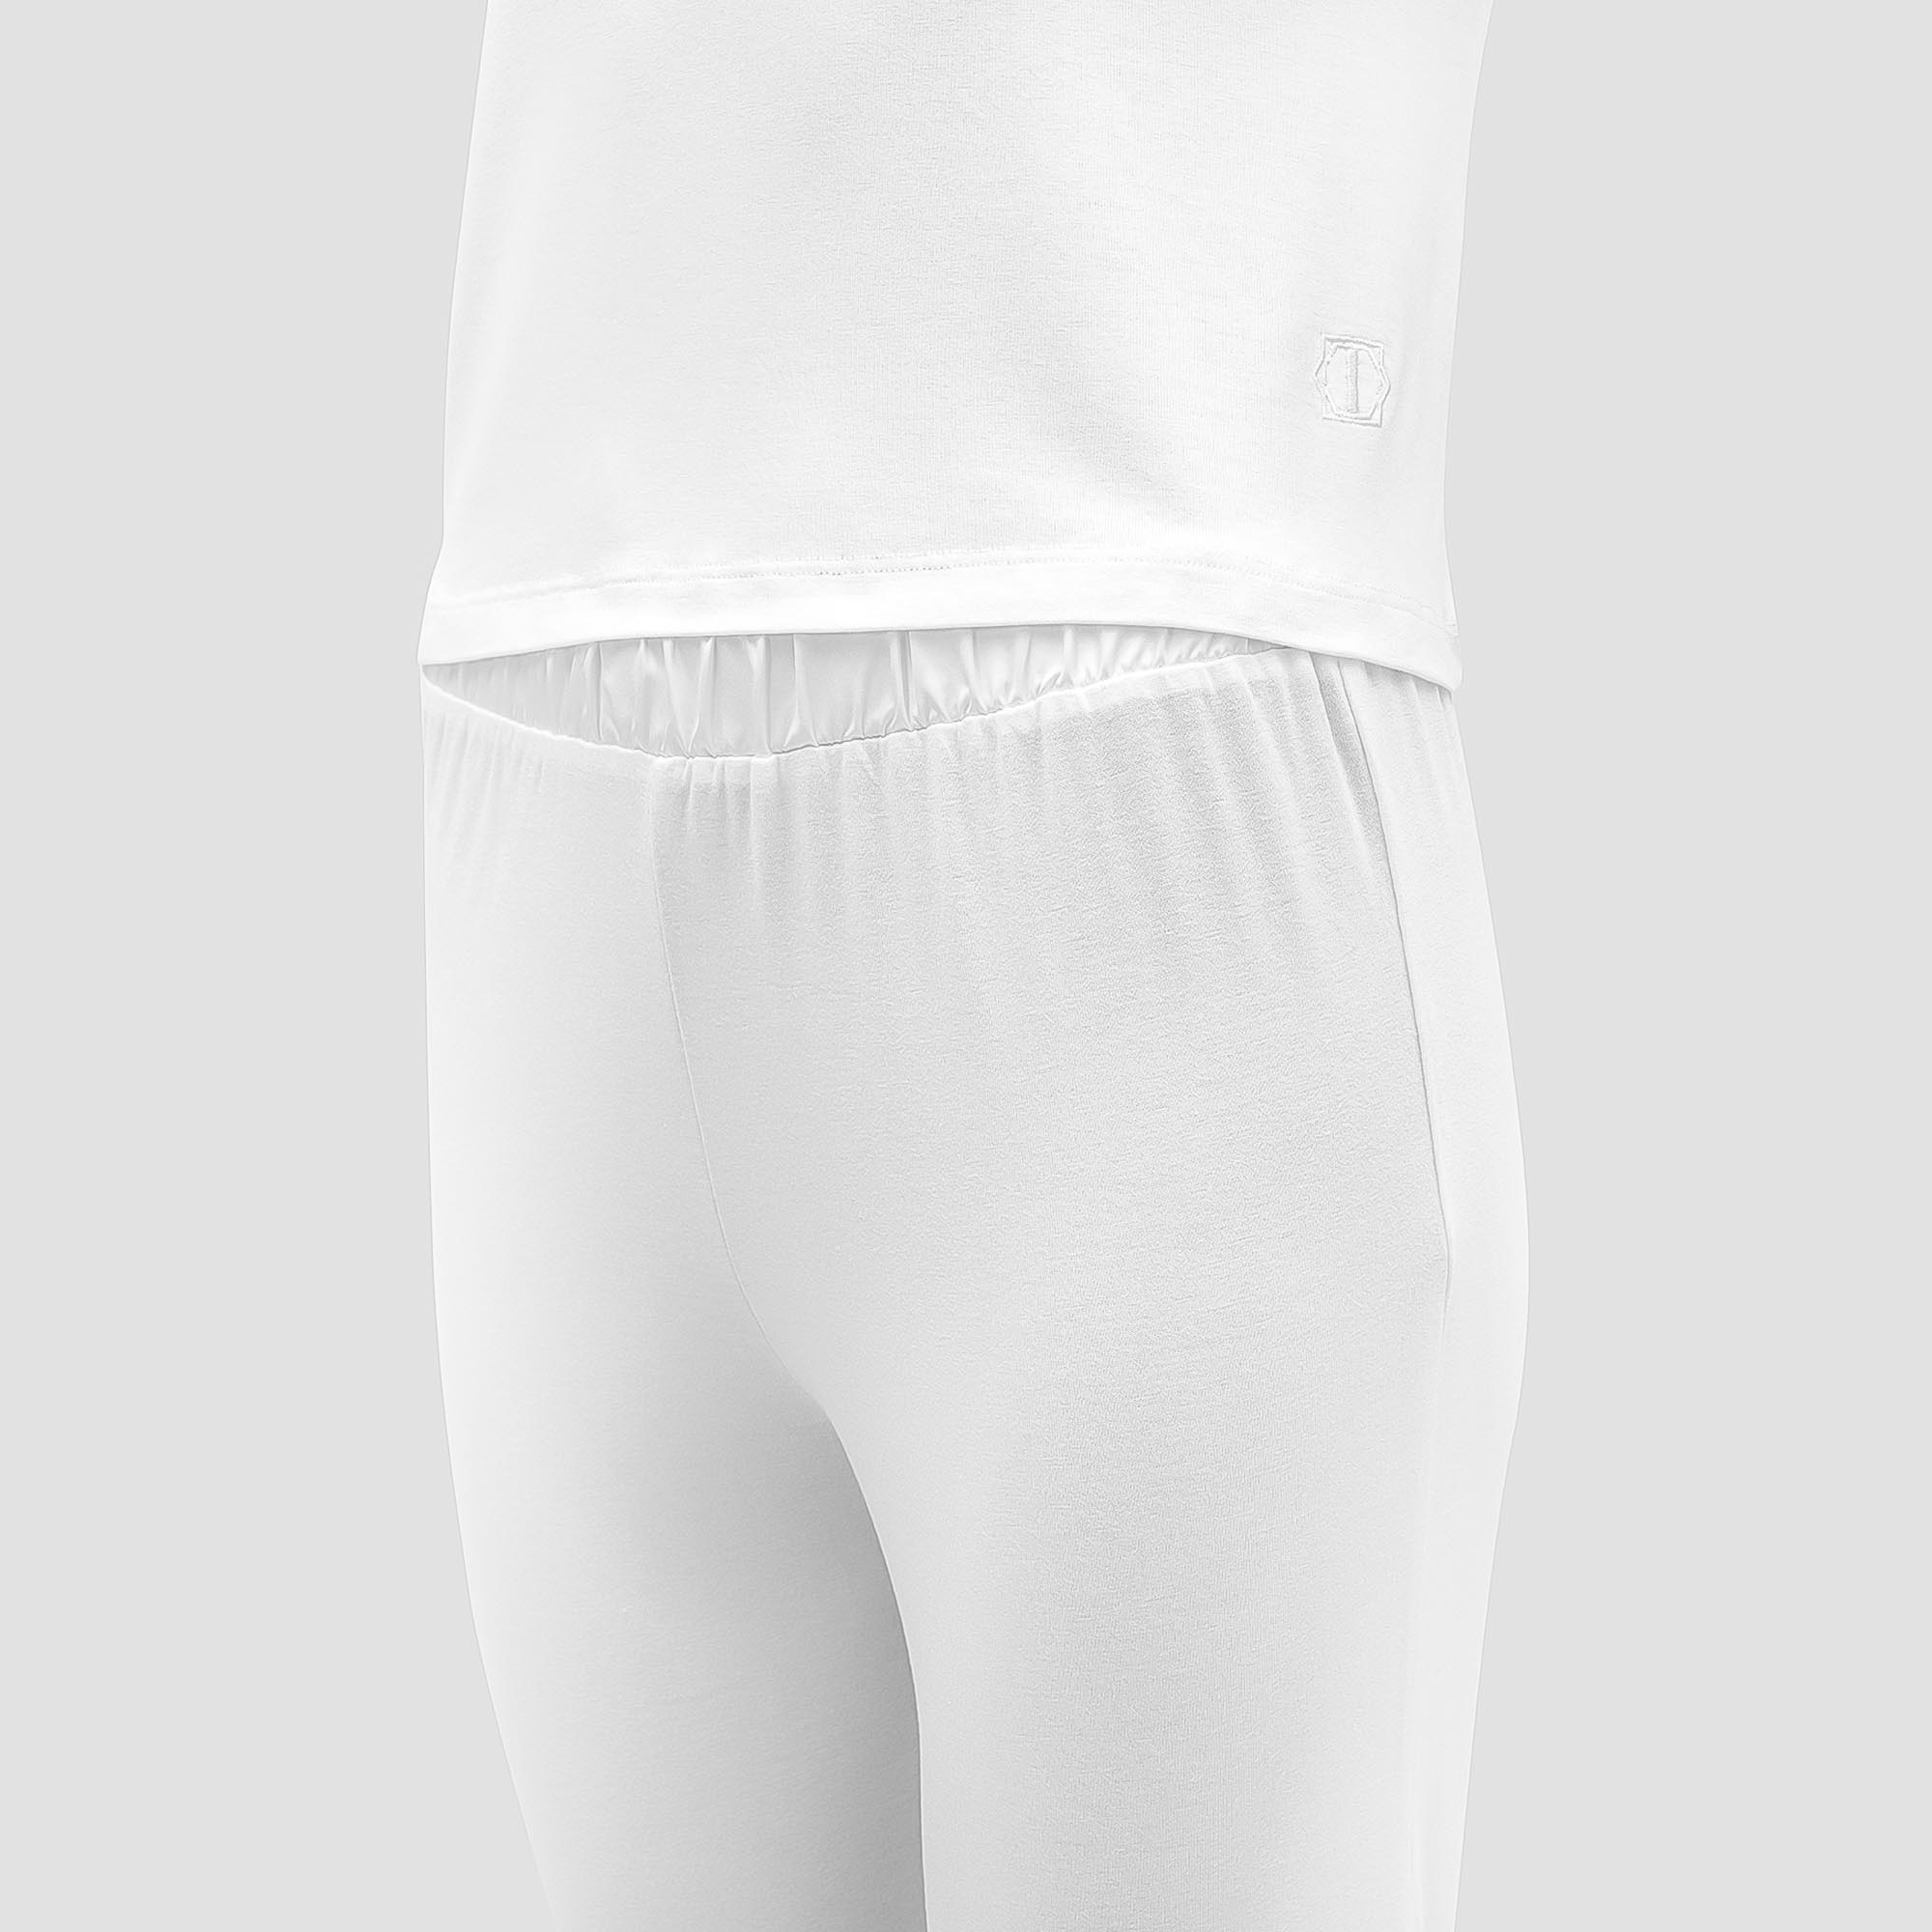 Пижама Togas Ингелла белая женская XXL(52) 2 предмета, цвет белый, размер XXL(52) - фото 2